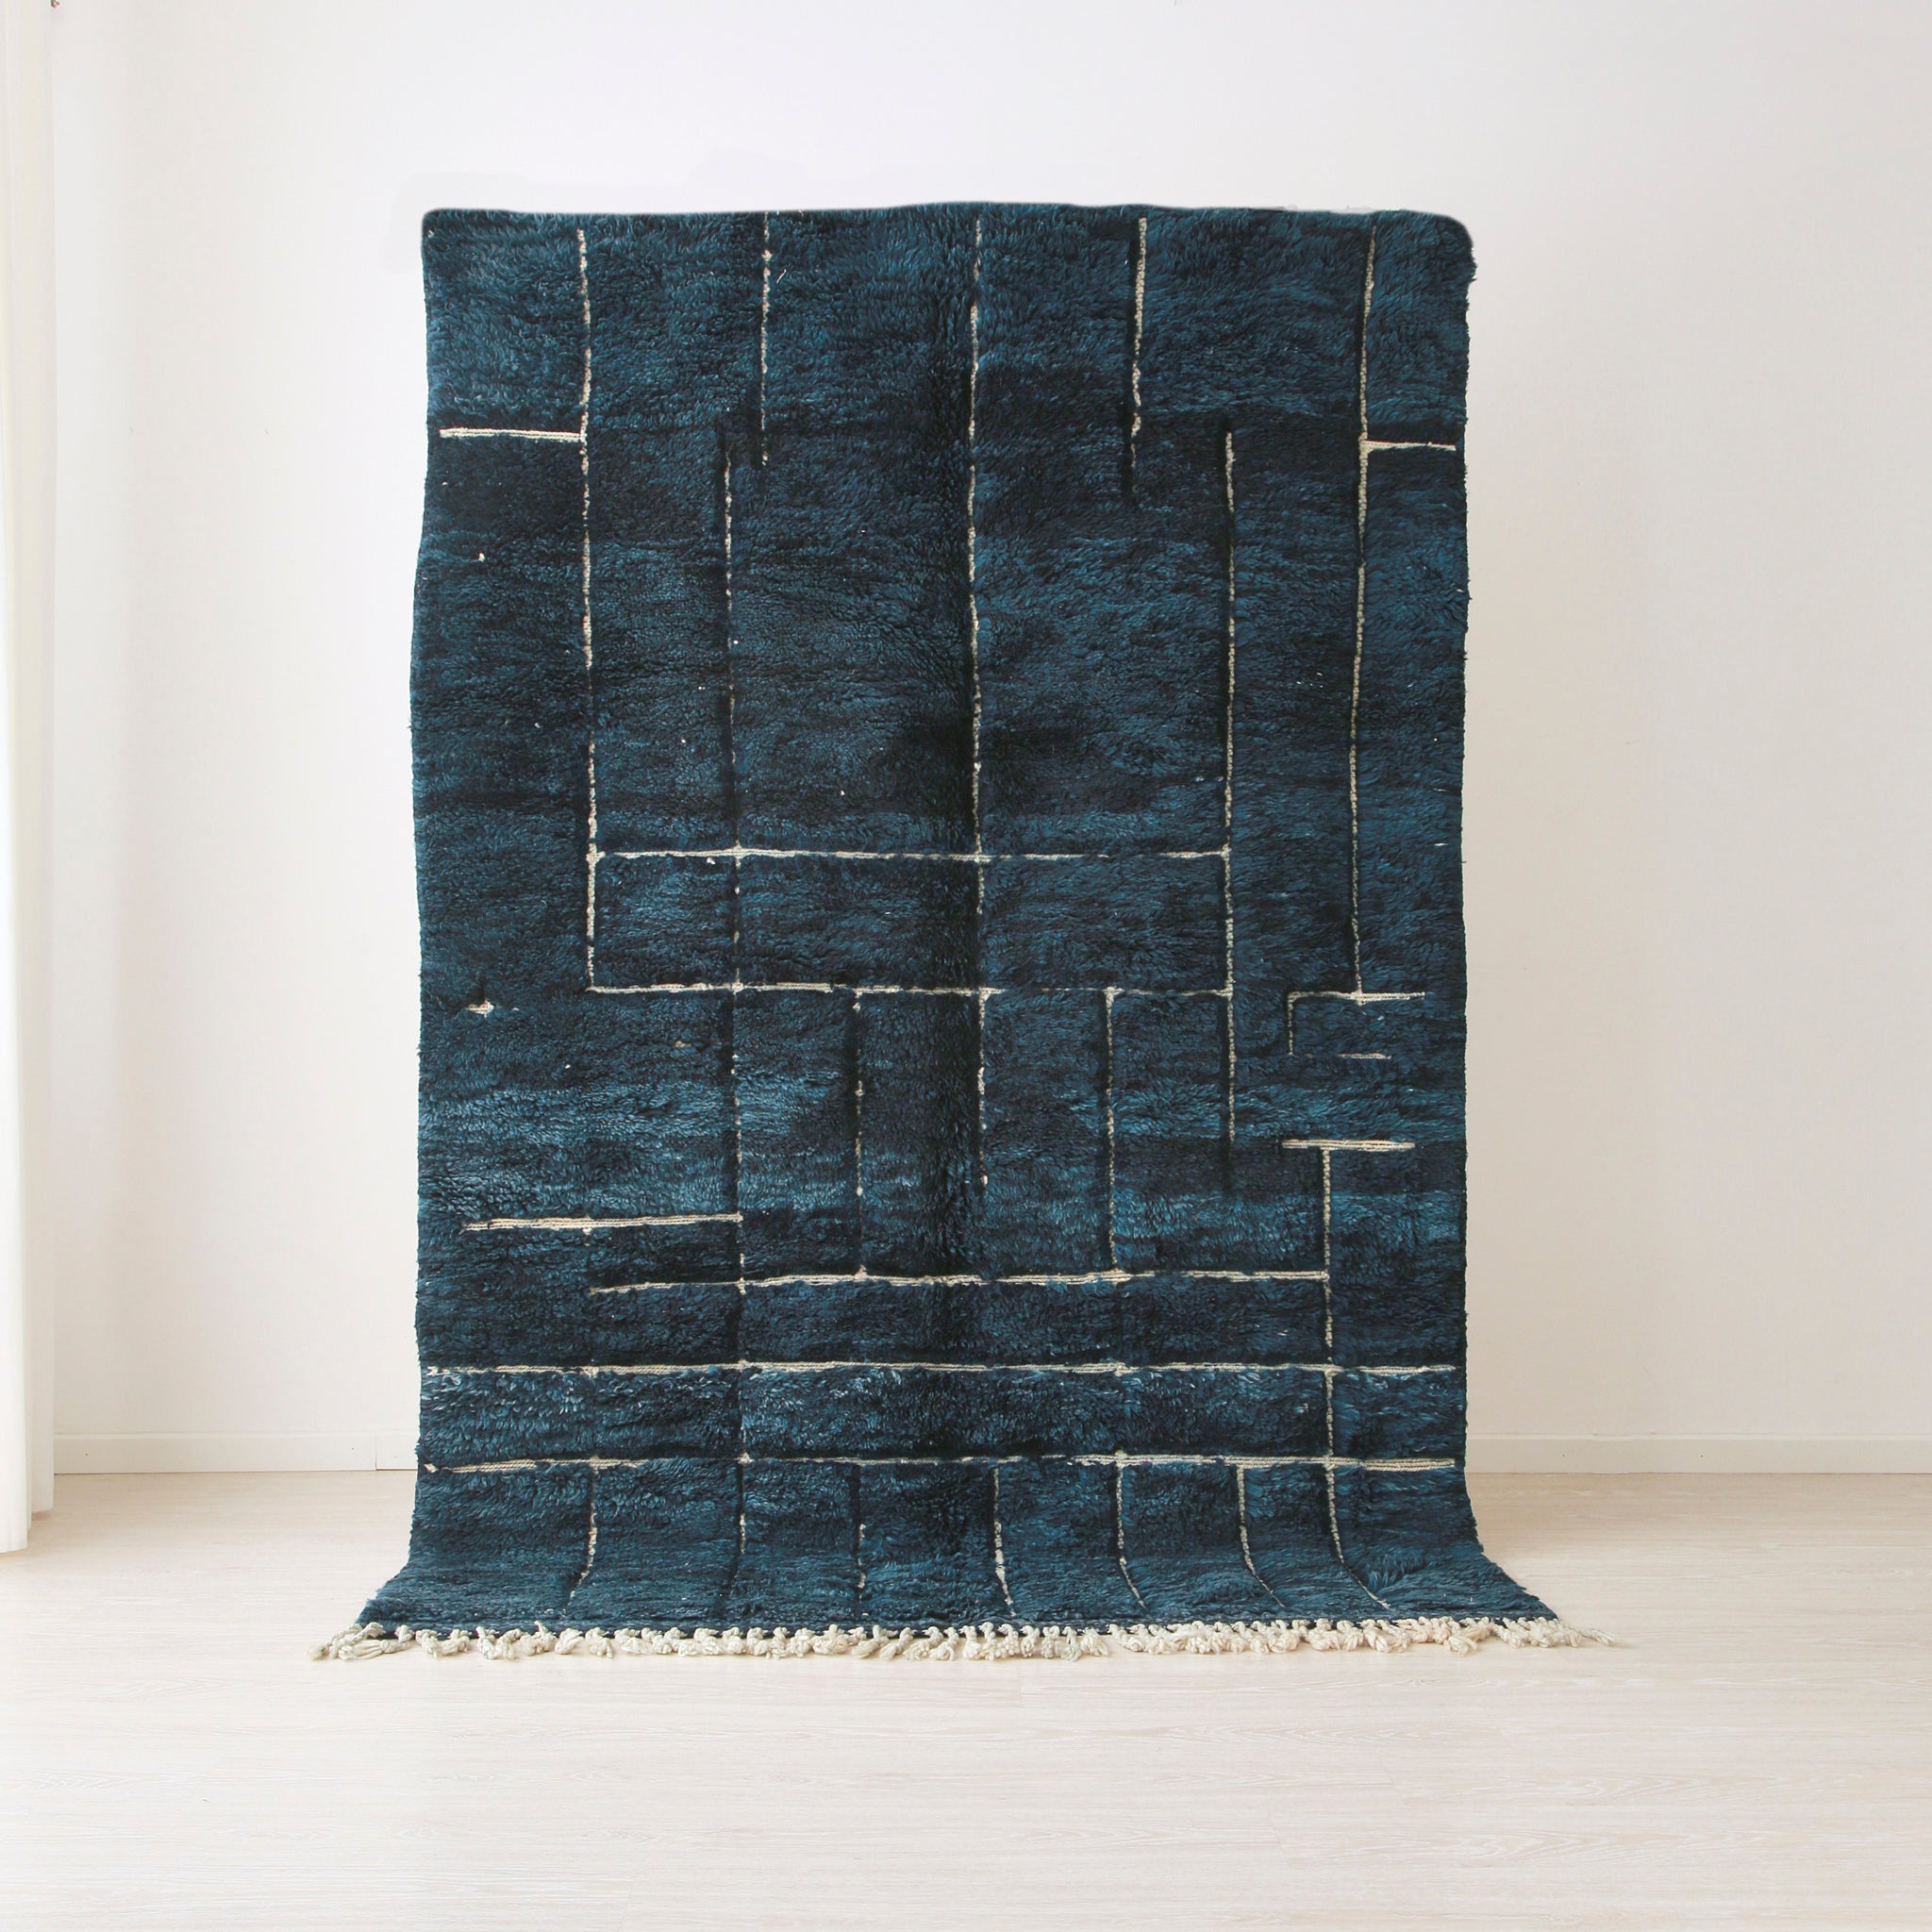 tappeto beni mrirt realizzato in lana tinta di blu. Sul tappeto emergono delle incisioni bianche che creano un disegno moderno